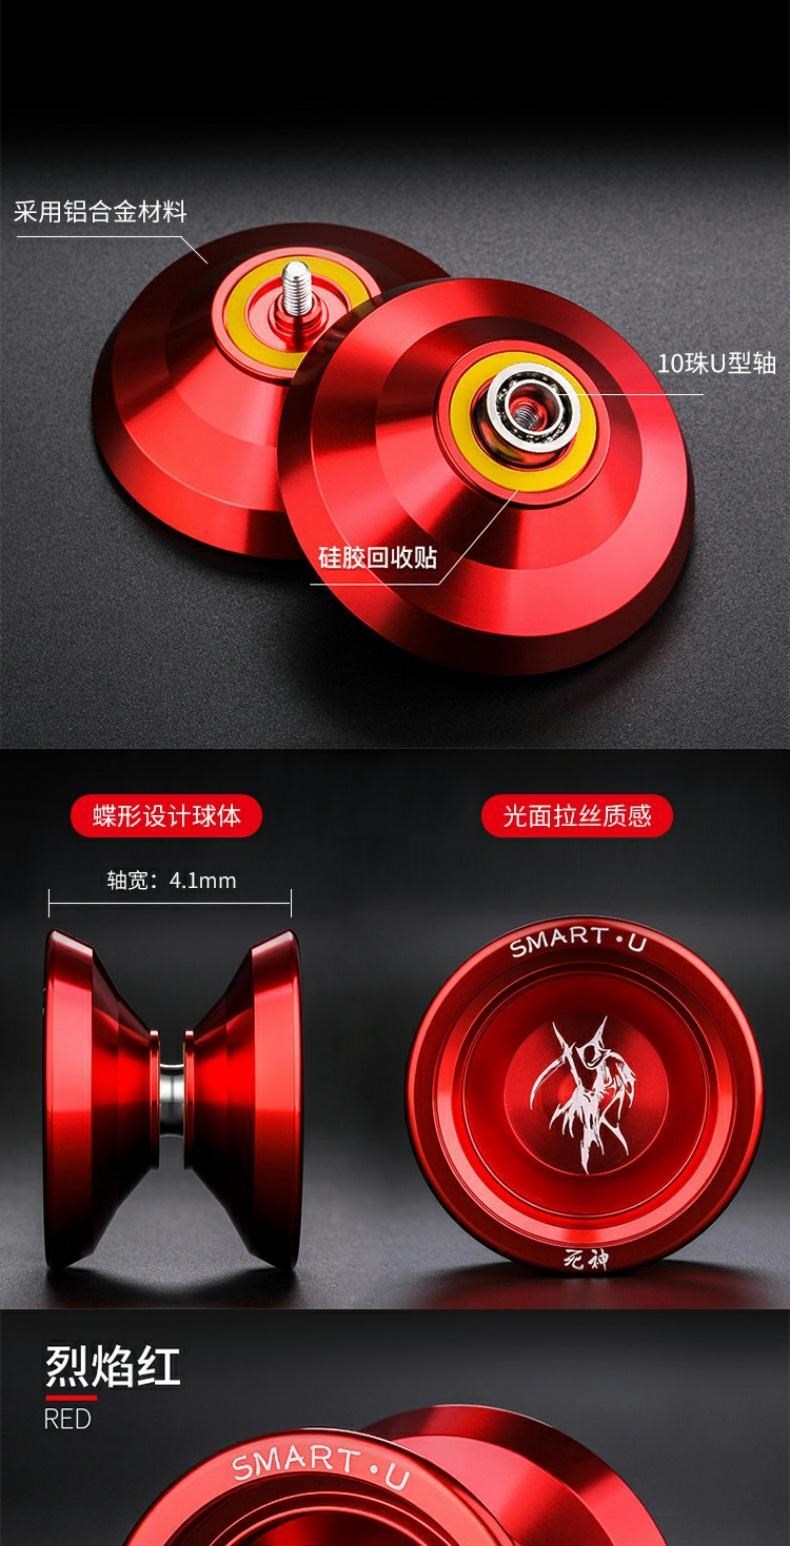 Xiaoyang’s family death cao cấp yo-yo bóng dài ưa thích đặc biệt trò chơi yo-yo chuyên nghiệp bằng kim loại siêu chuyên nghiệp cho giấc ngủ của trẻ em - YO-YO